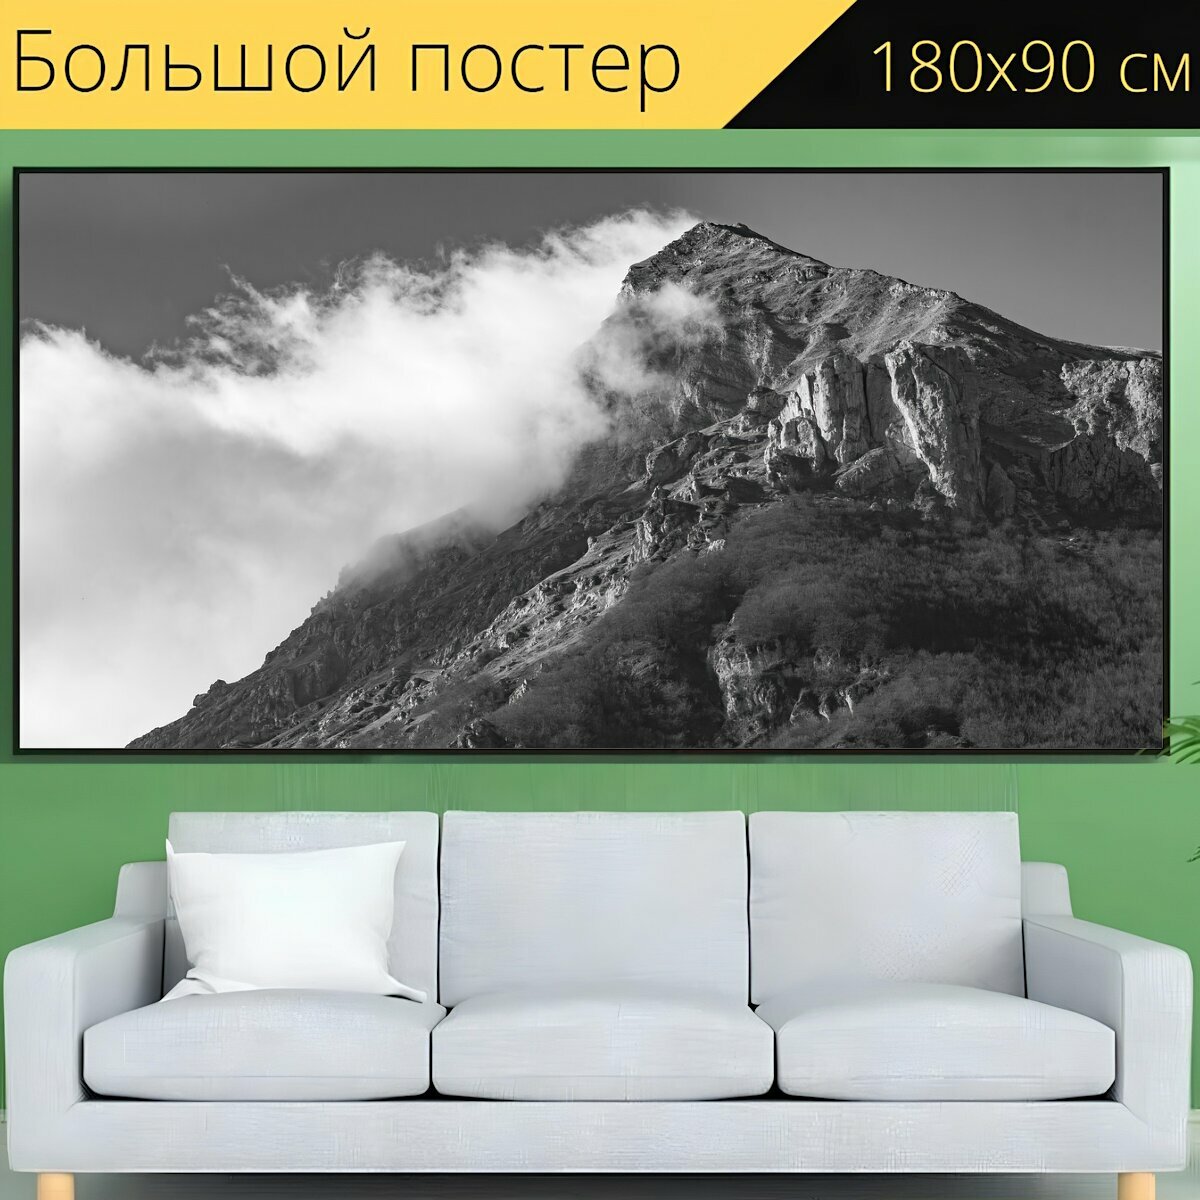 Большой постер "Монтировать вектор парк гор сибиллини" 180 x 90 см. для интерьера